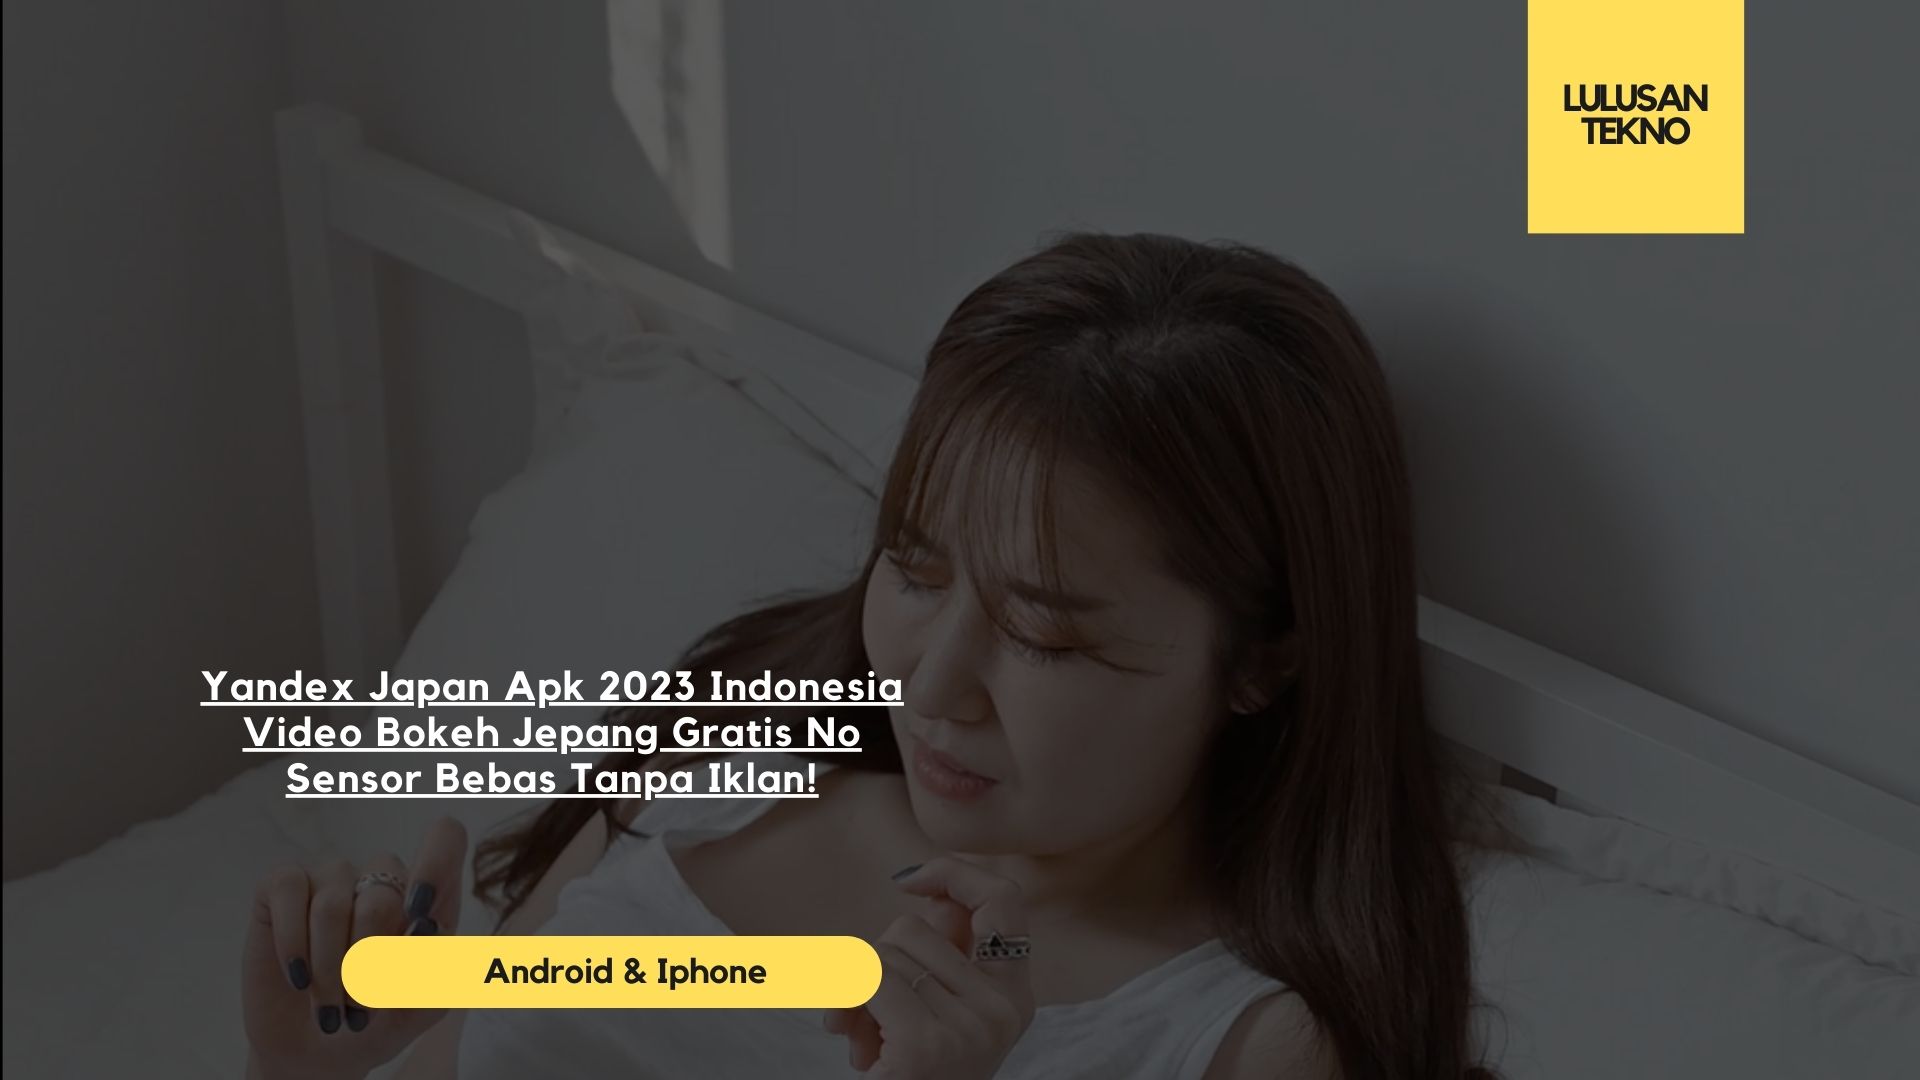 Yandex Japan Apk 2023 Indonesia Video Bokeh Jepang Gratis No Sensor Bebas Tanpa Iklan!